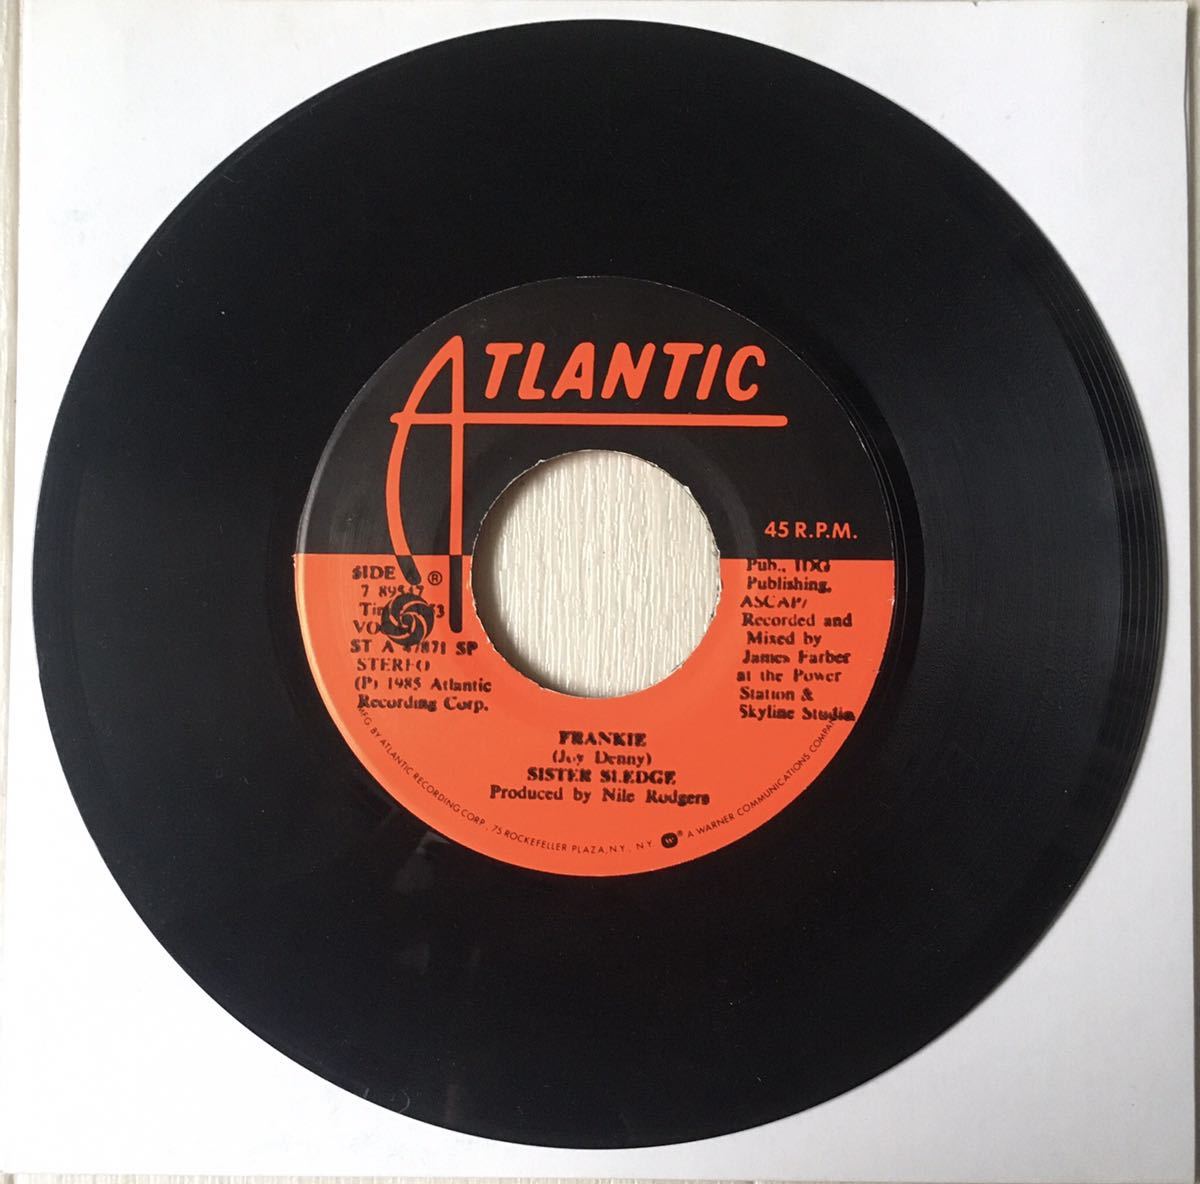 7インチレコード / Sister Sledge - Frankie / Hold Out Poppy / Nile Rodgers Prod. / Disco Soul Funk /の画像1